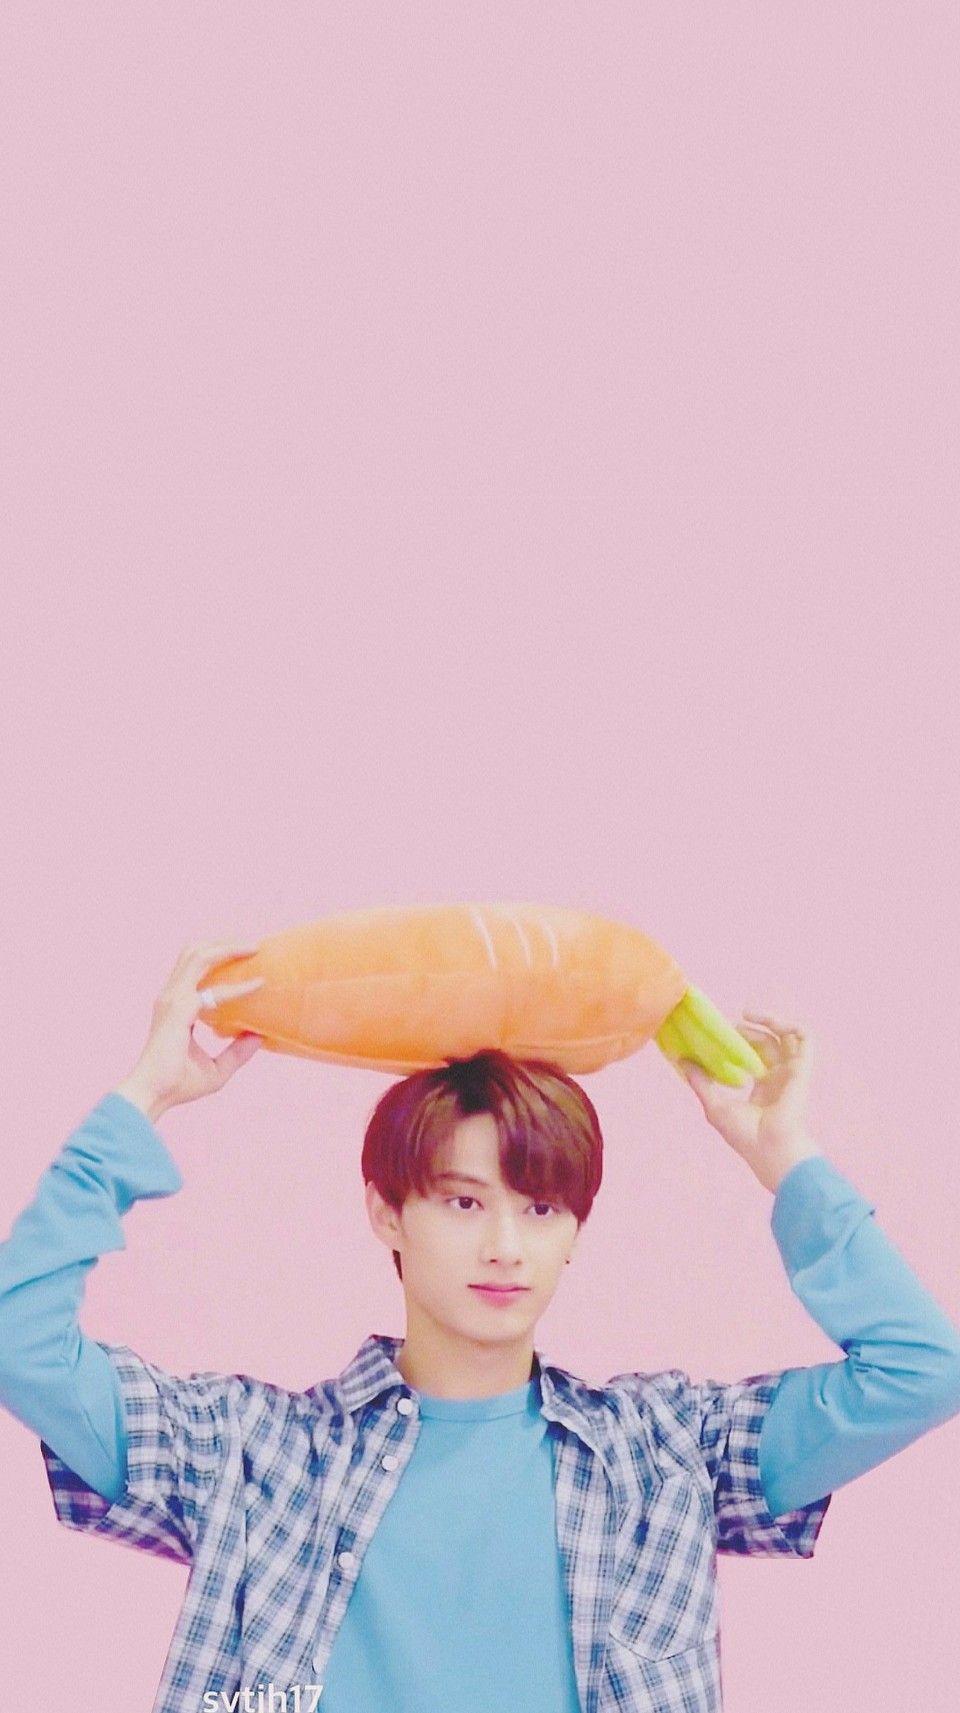 Carrot Jun with a carrot. Seventeen wallpaper, Seventeen